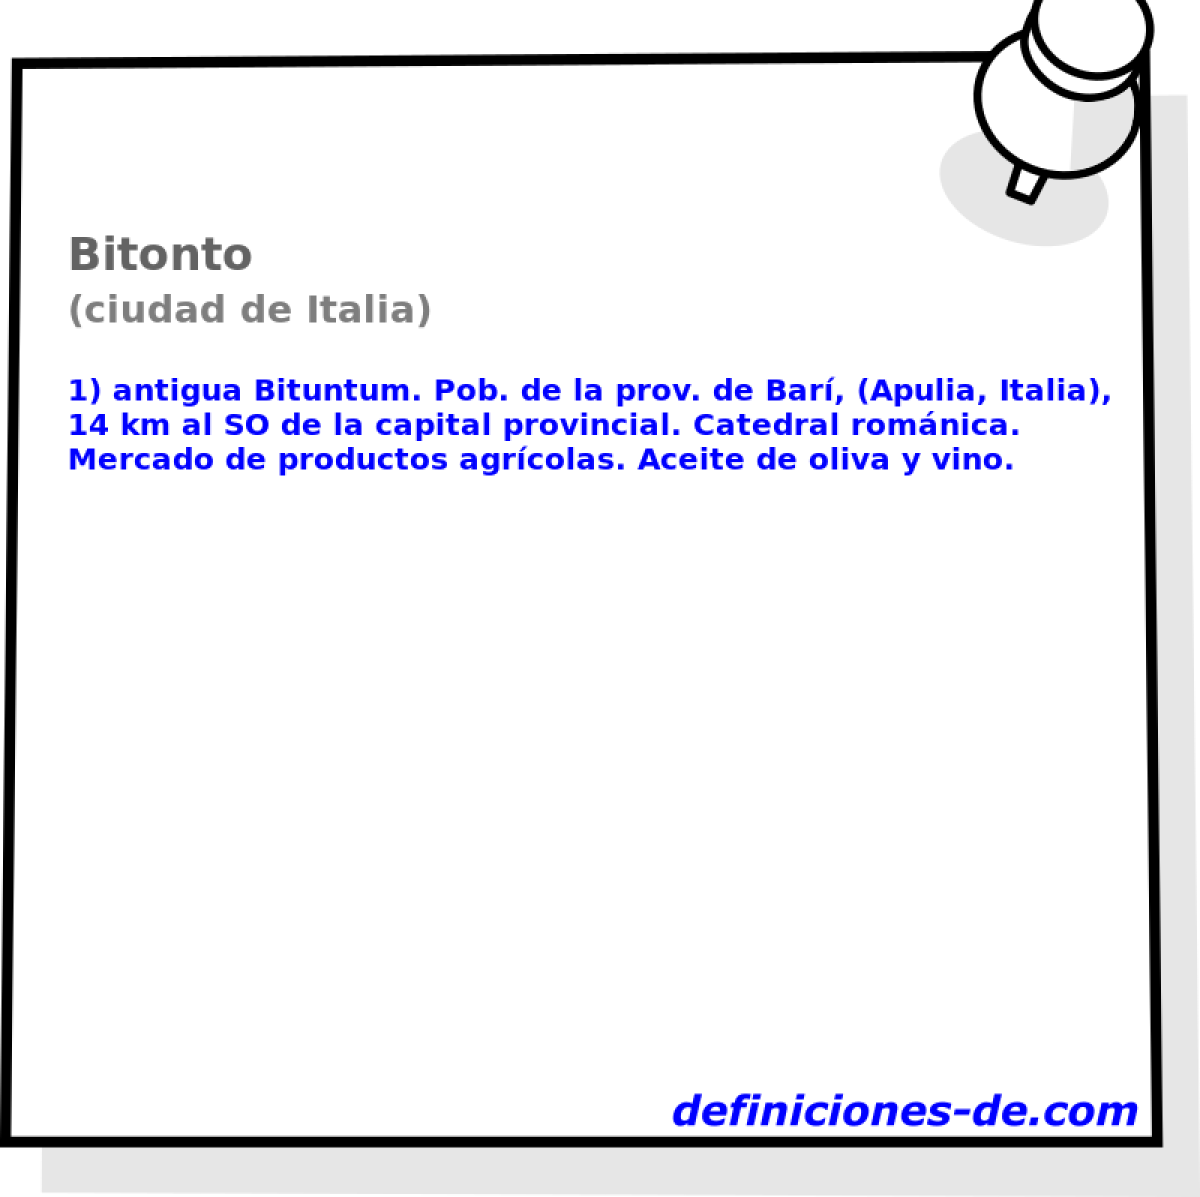 Bitonto (ciudad de Italia)